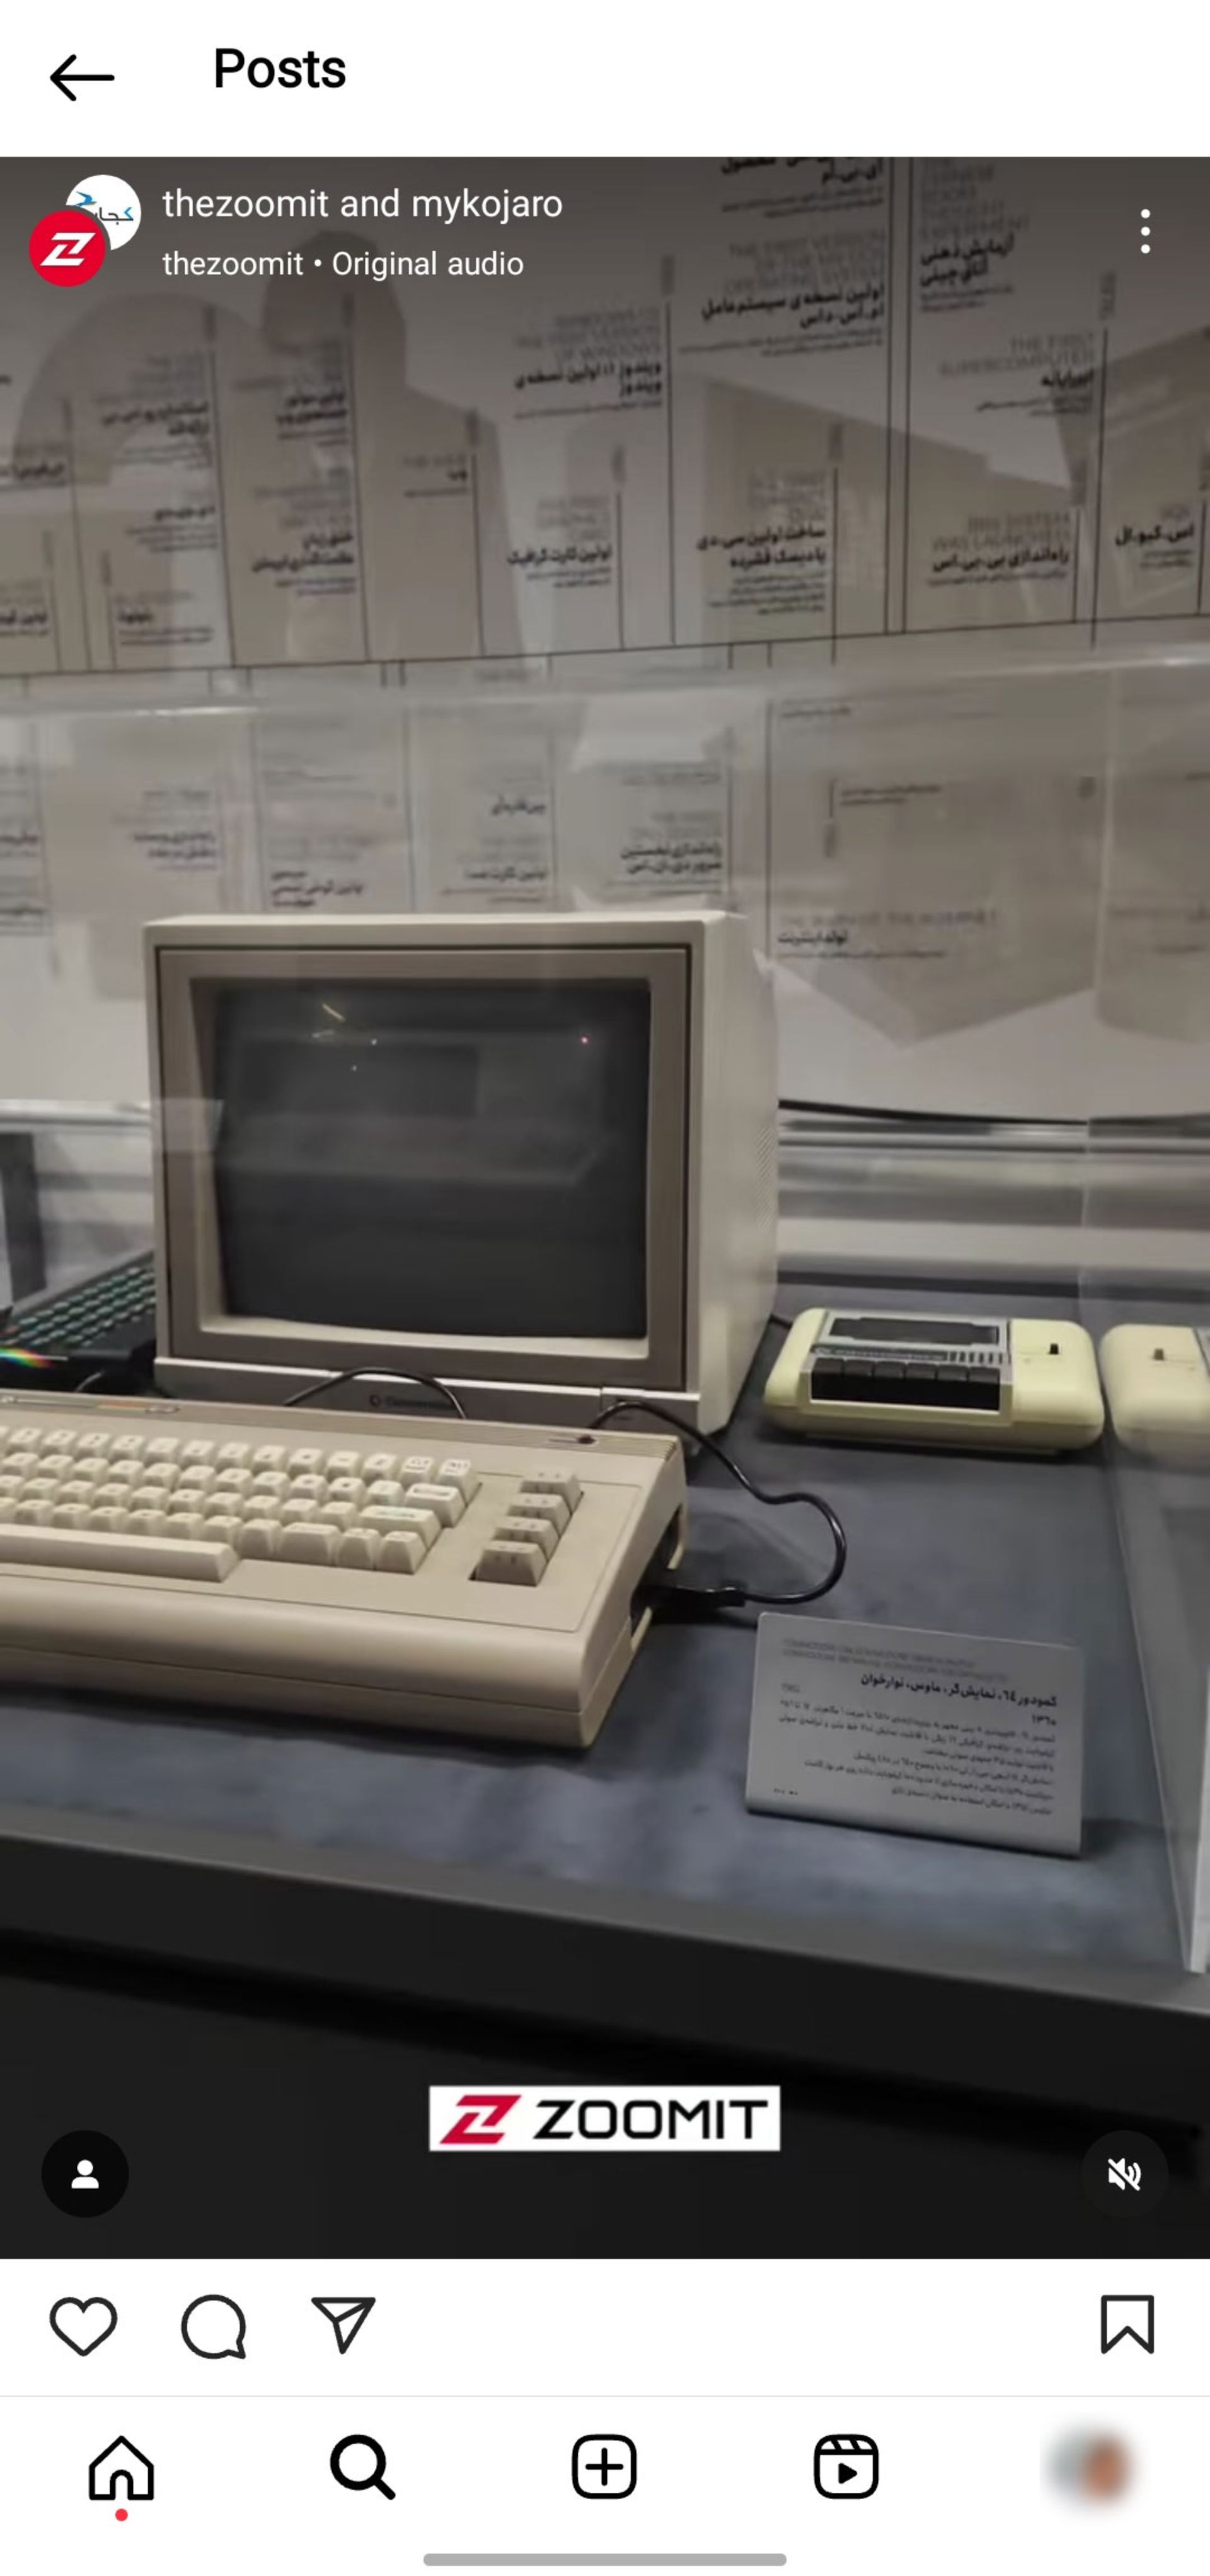 پست اینستاگرام زومیت و کجارو در مورد موزه کامپیوتر